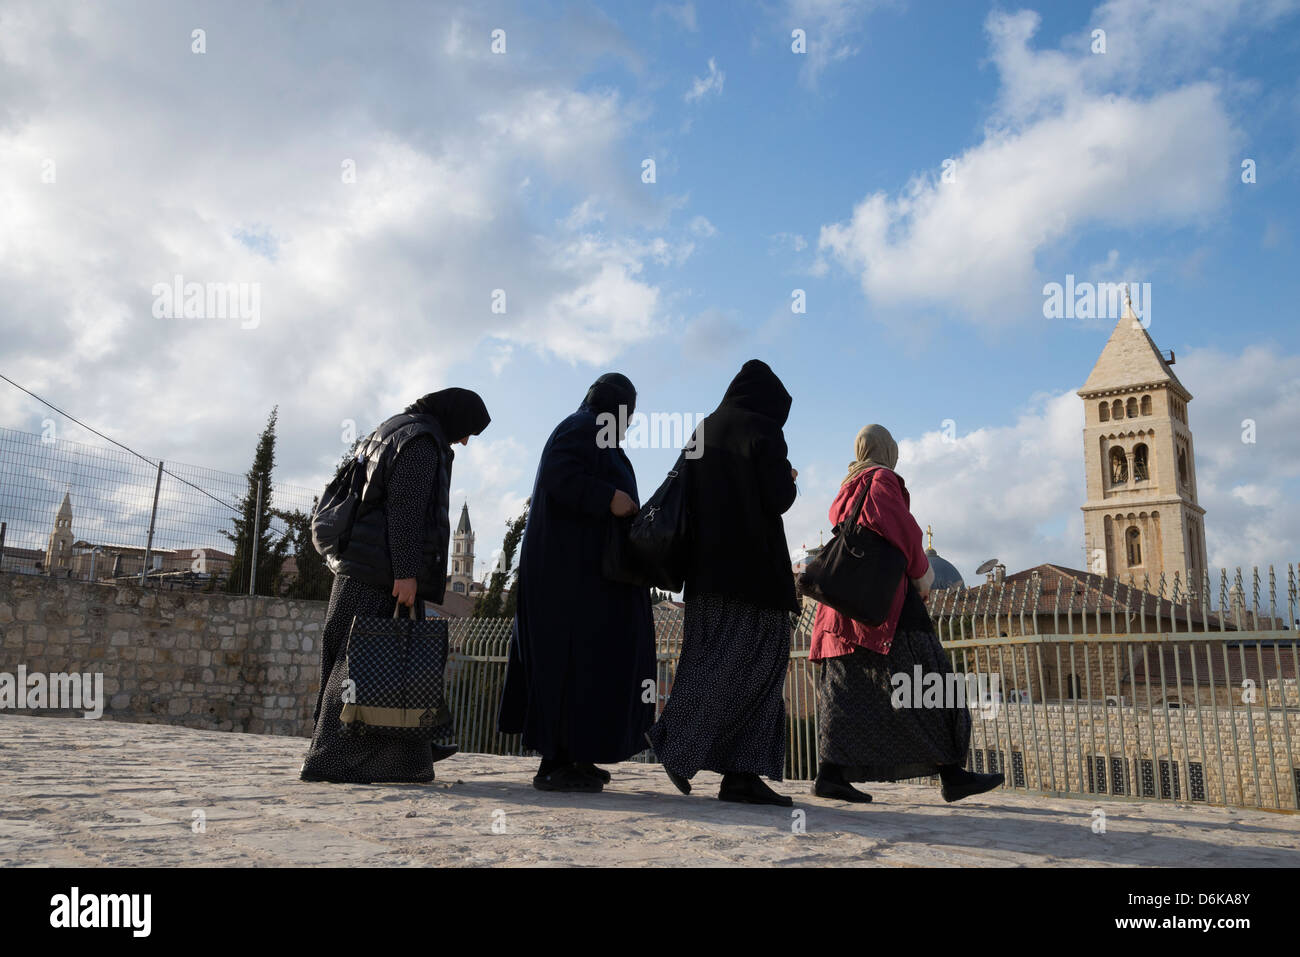 Quatre femmes russes les pèlerins sur une terrasse avec Rédempteur church et Saint Sépulcre en arrière-plan. Vieille ville de Jérusalem. Israël. Banque D'Images